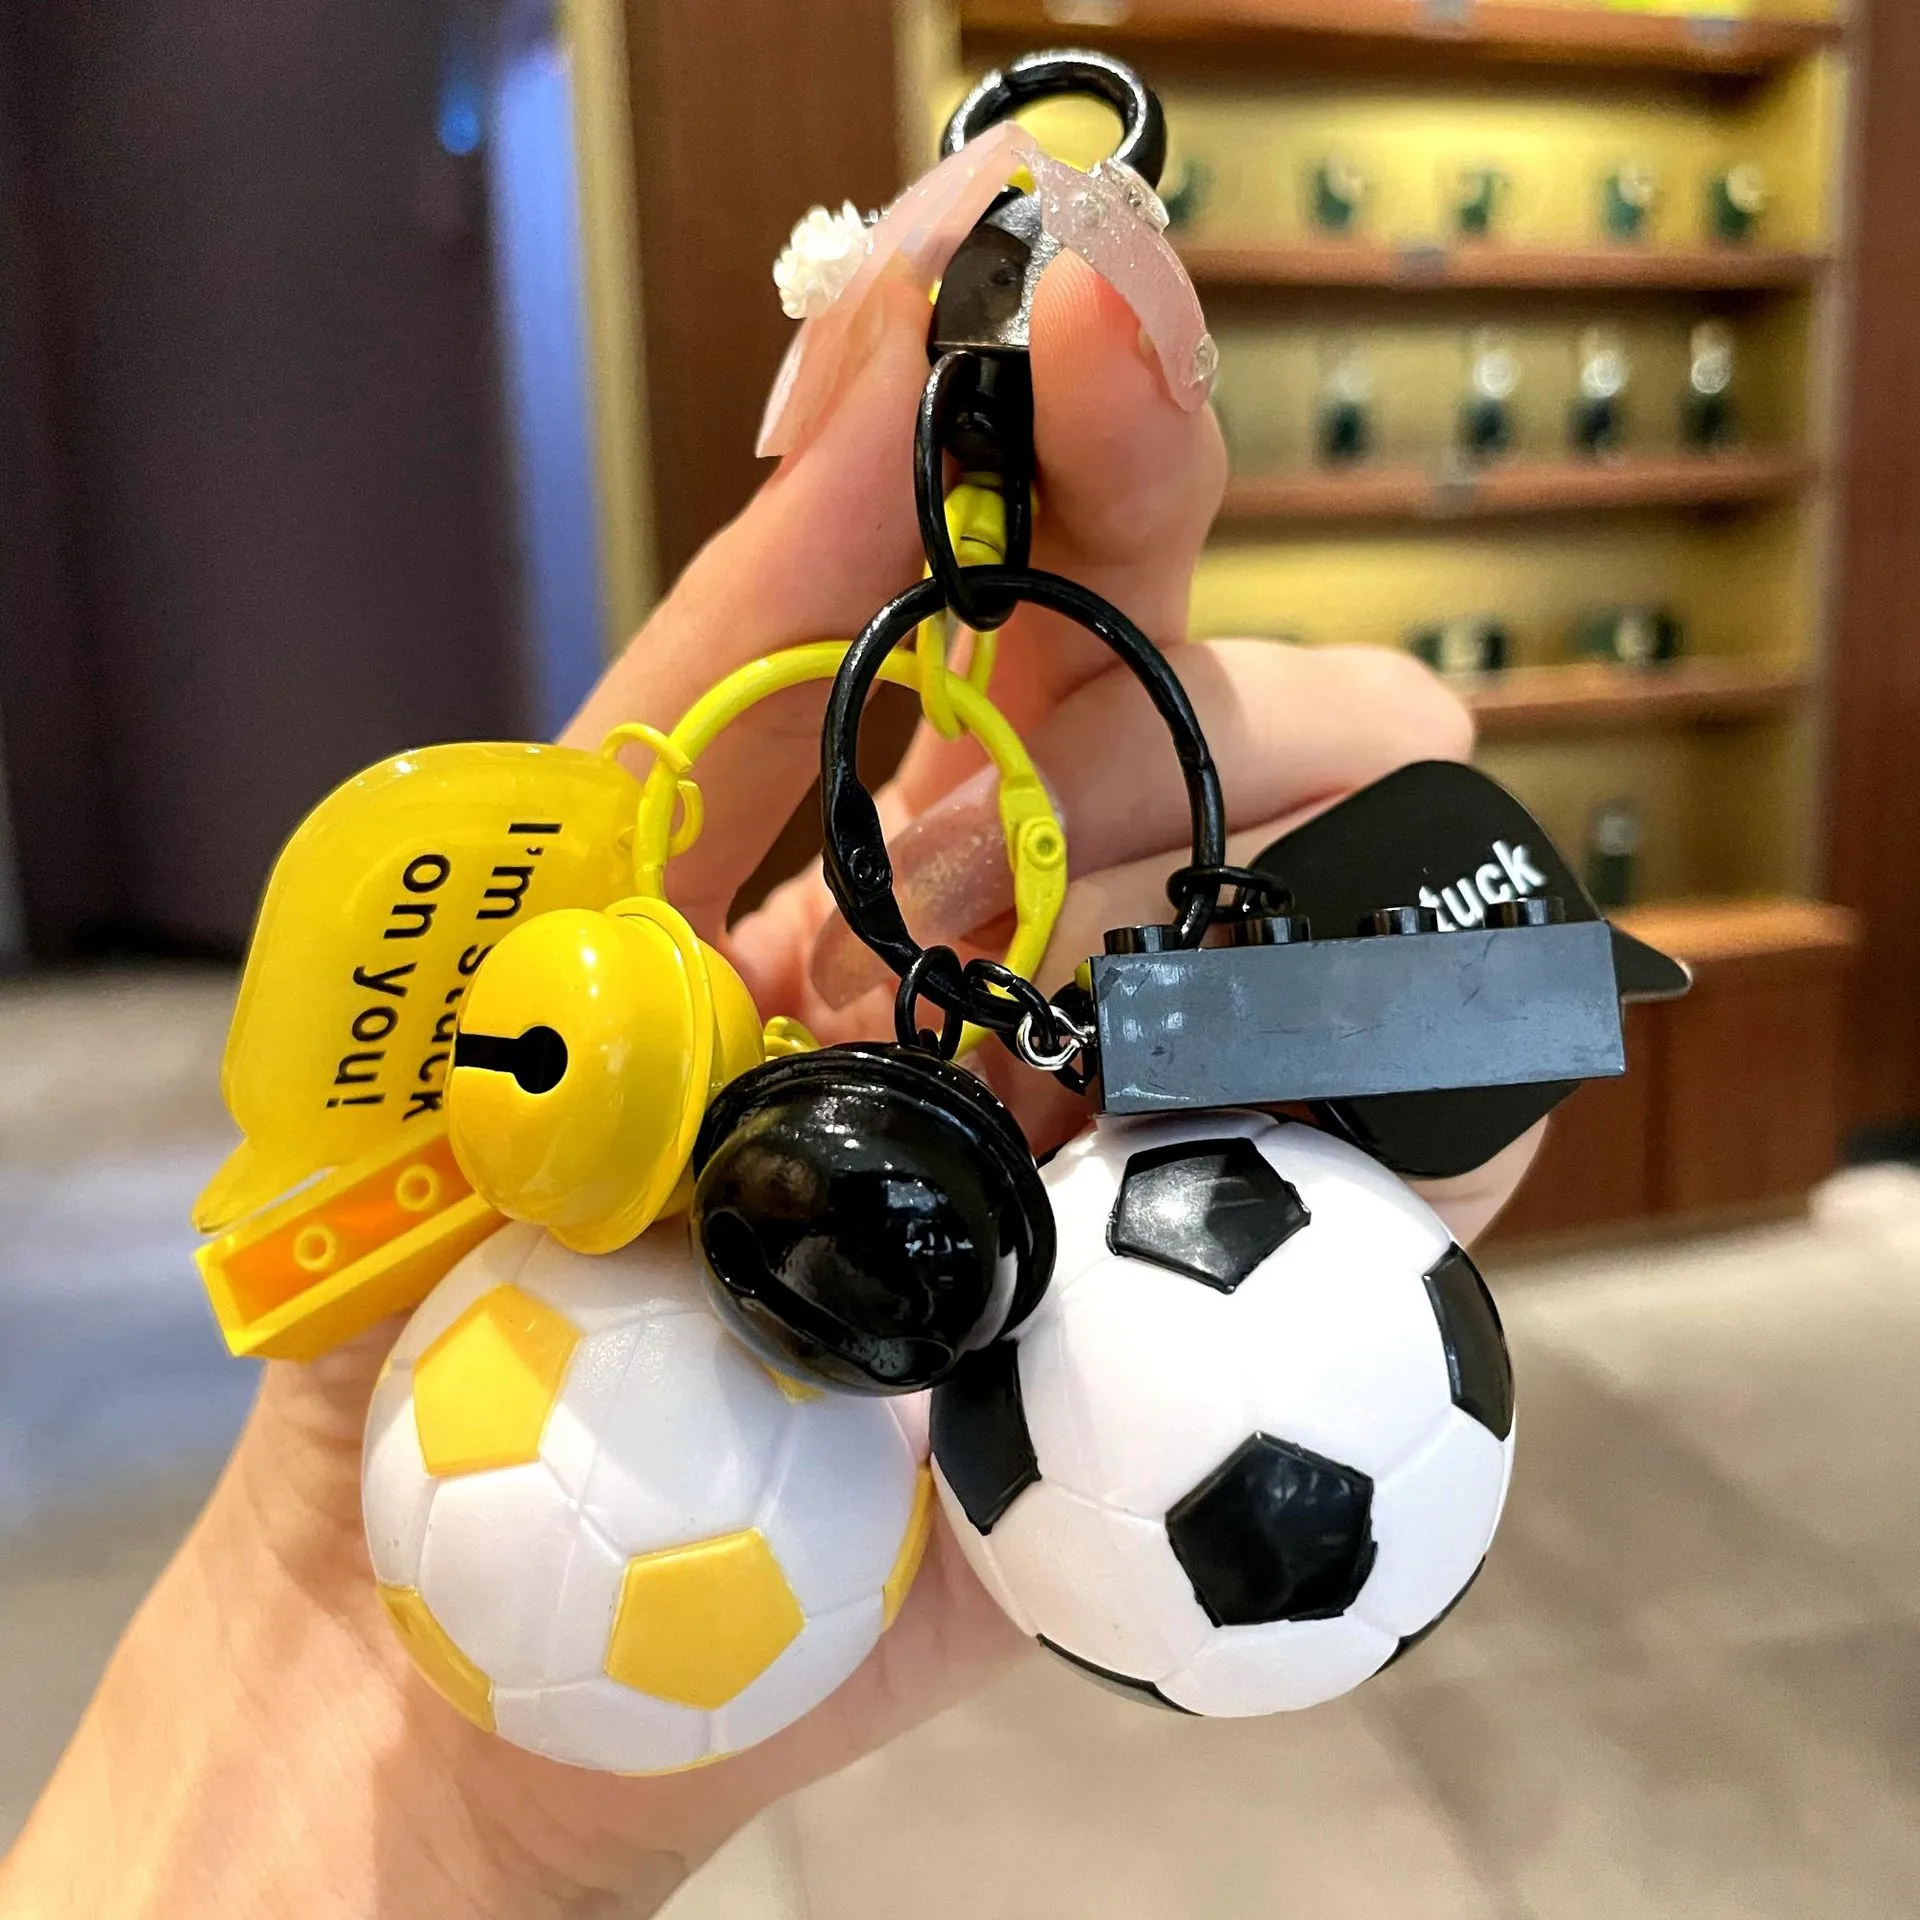 월드컵 시뮬레이션 축구 축구 키 체인 키 체인 스포츠 시리즈 시리즈 펜던트 핫 판매 크리에이티브 팬 작은 선물 선물